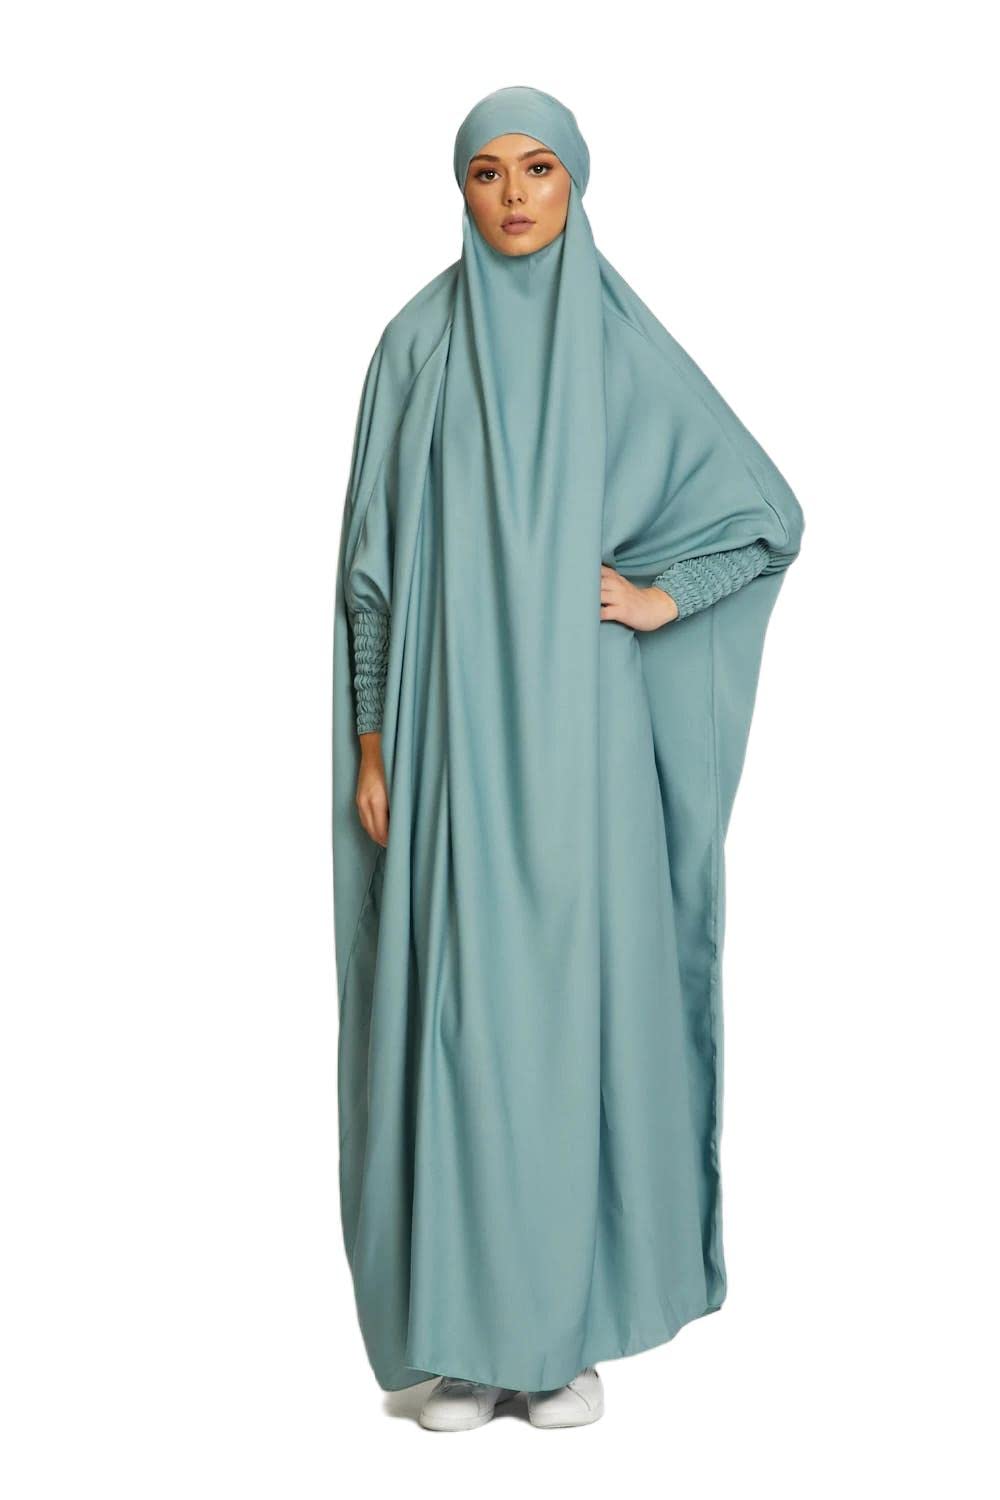 RUIG Frauen Kleid muslimisches Gebet Abaya islamische Robe Maxi afrikanischer Kaftan Türkei Islam Dubai Türkei Kleid in voller Länge mit Hijab, Hellgrün, Einheitsgröße